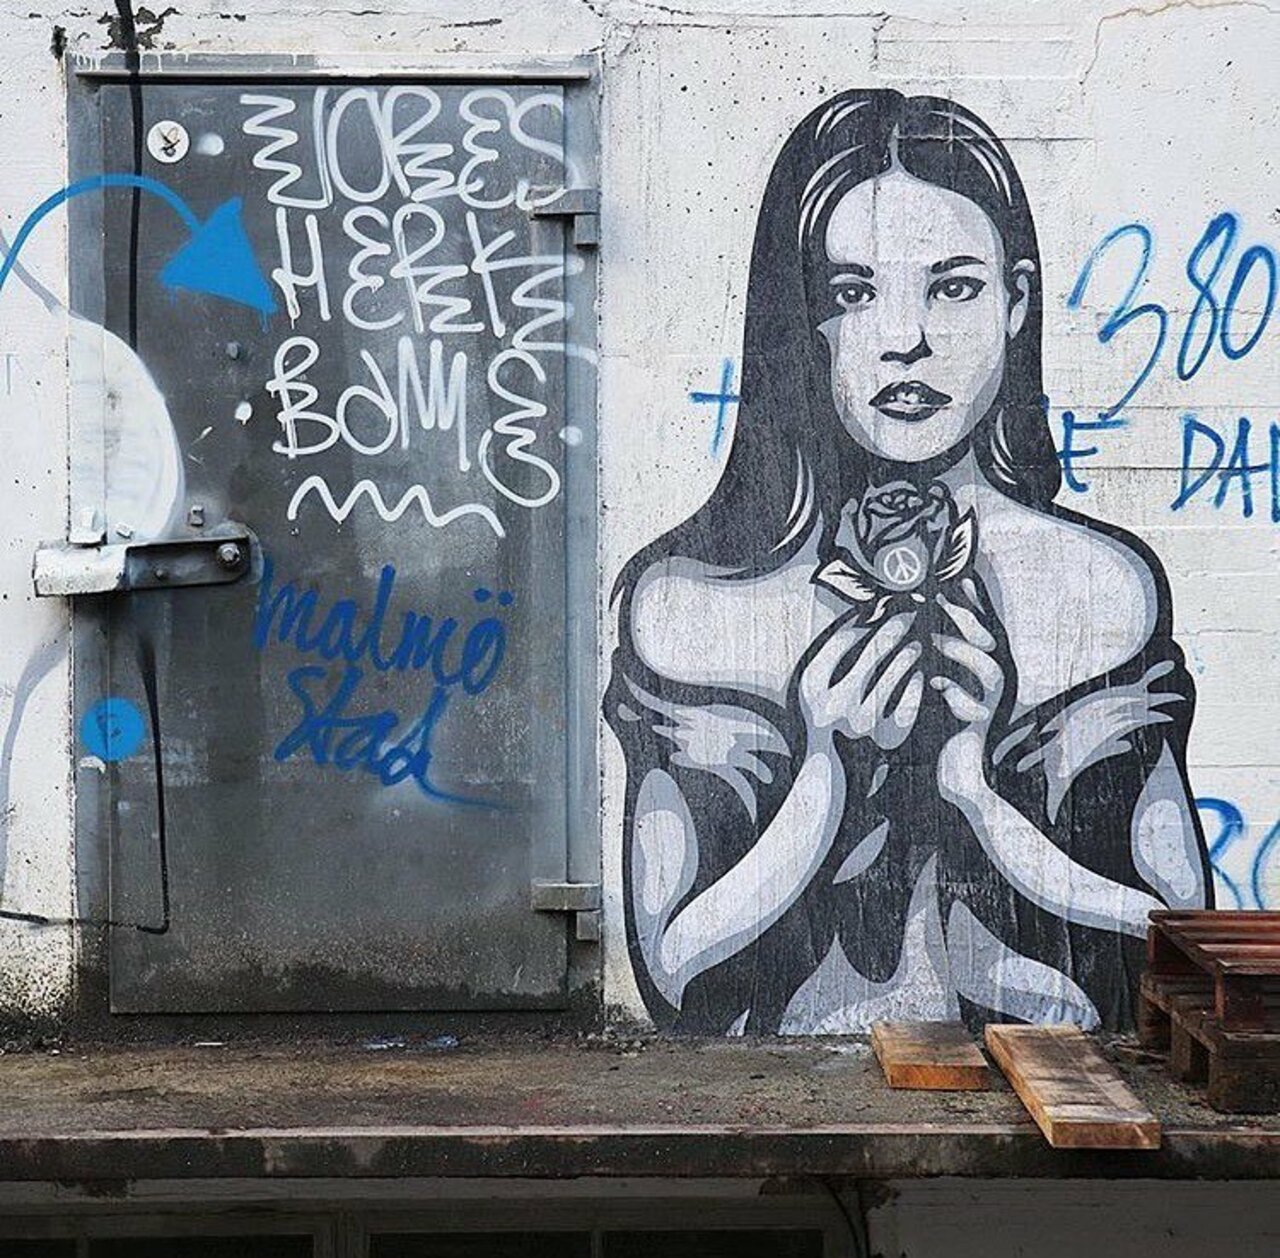 Love this piece by @enerkonings #globalstreetart #graffiti #streetart #wallart http://globalstreetart.com/ener-konings https://t.co/nish1UiZ57